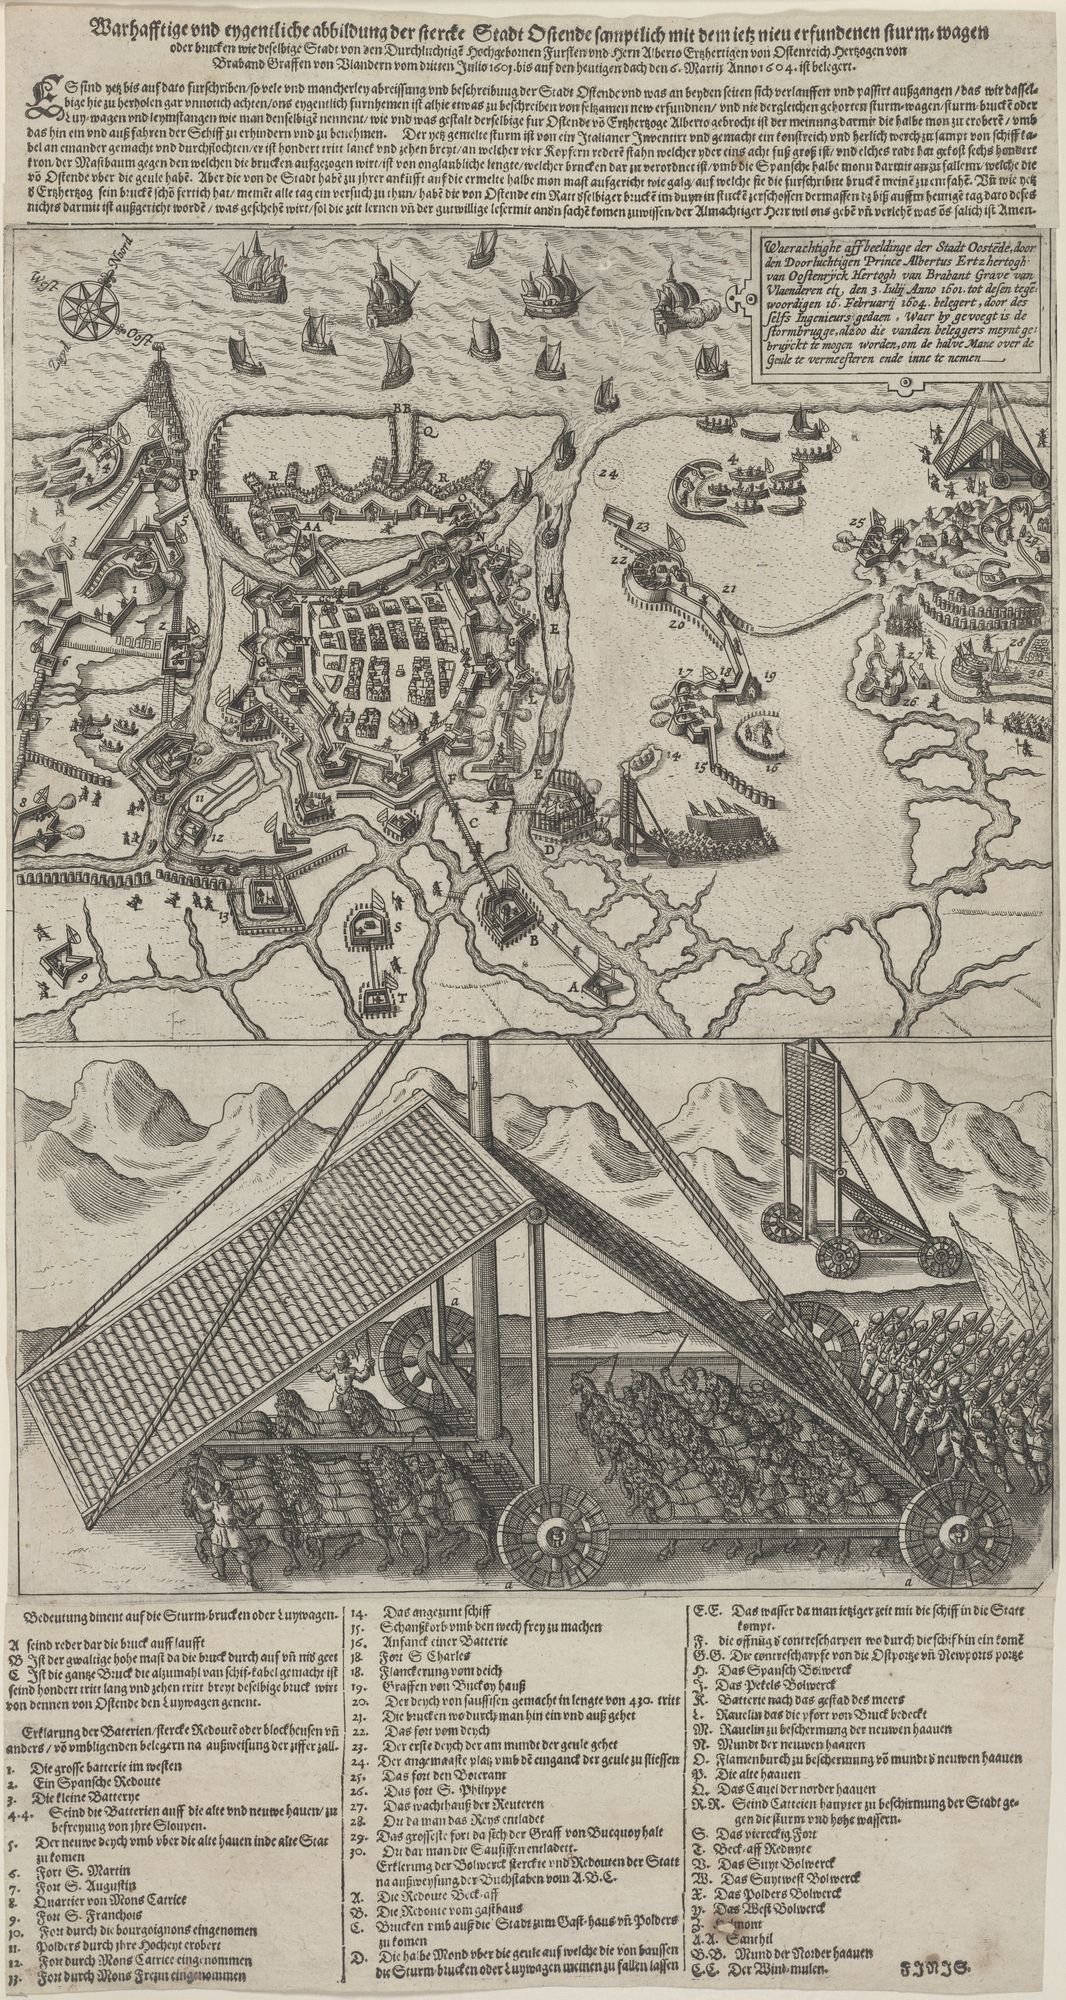 Warhafftige und eygentliche abbildung der stercke Stadt Ostende samptlich (...) Anno 1604. ist belegert. (Kulturstiftung Sachsen-Anhalt Public Domain Mark)